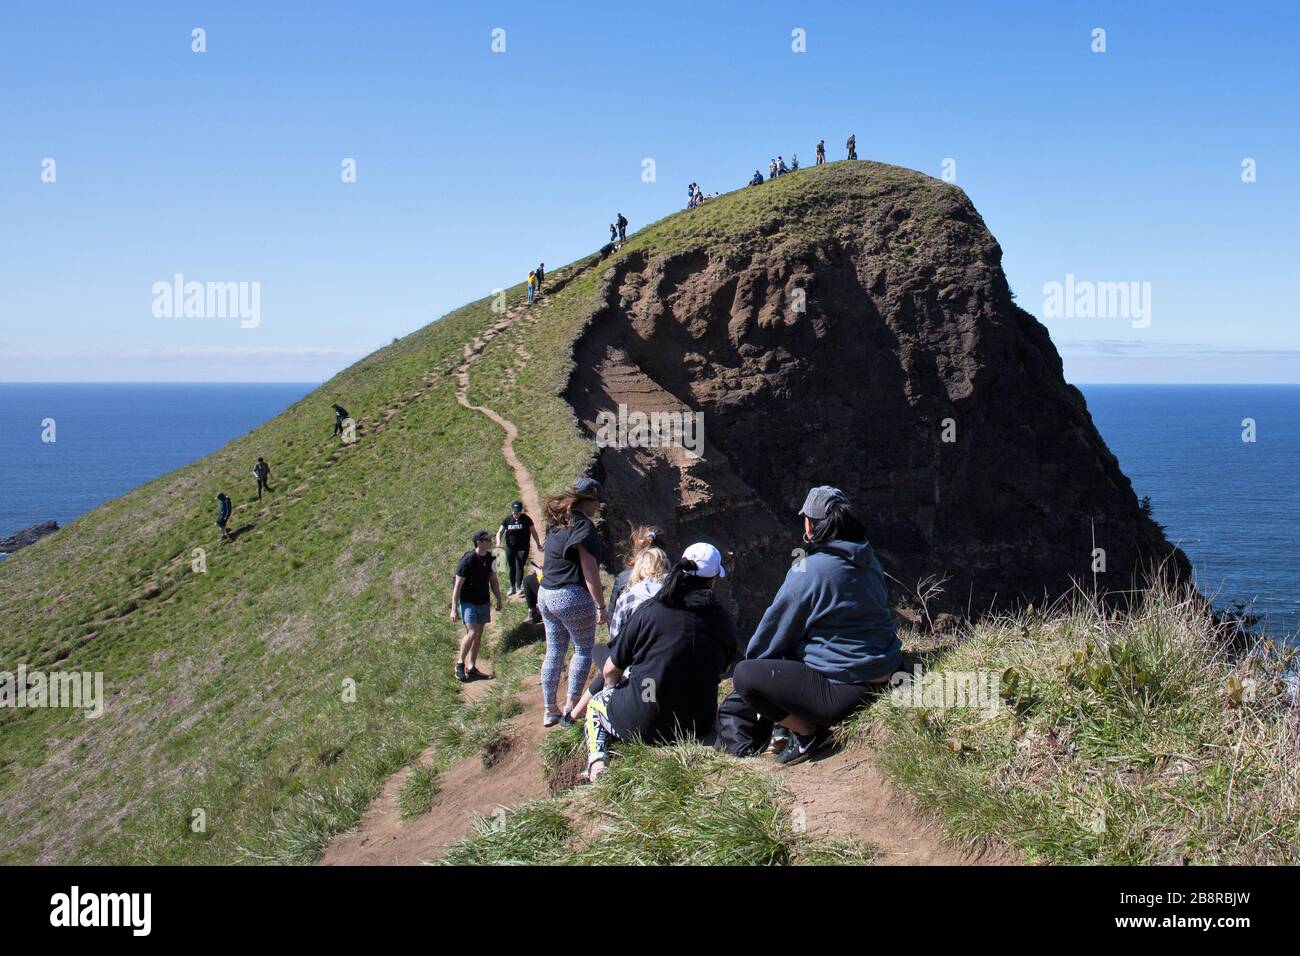 Les gens grimpent sur le sentier escarpé menant à God's Thumb, un bouchon volcanique qui est un lieu de randonnée populaire à Lincoln City, Oregon, États-Unis. Banque D'Images